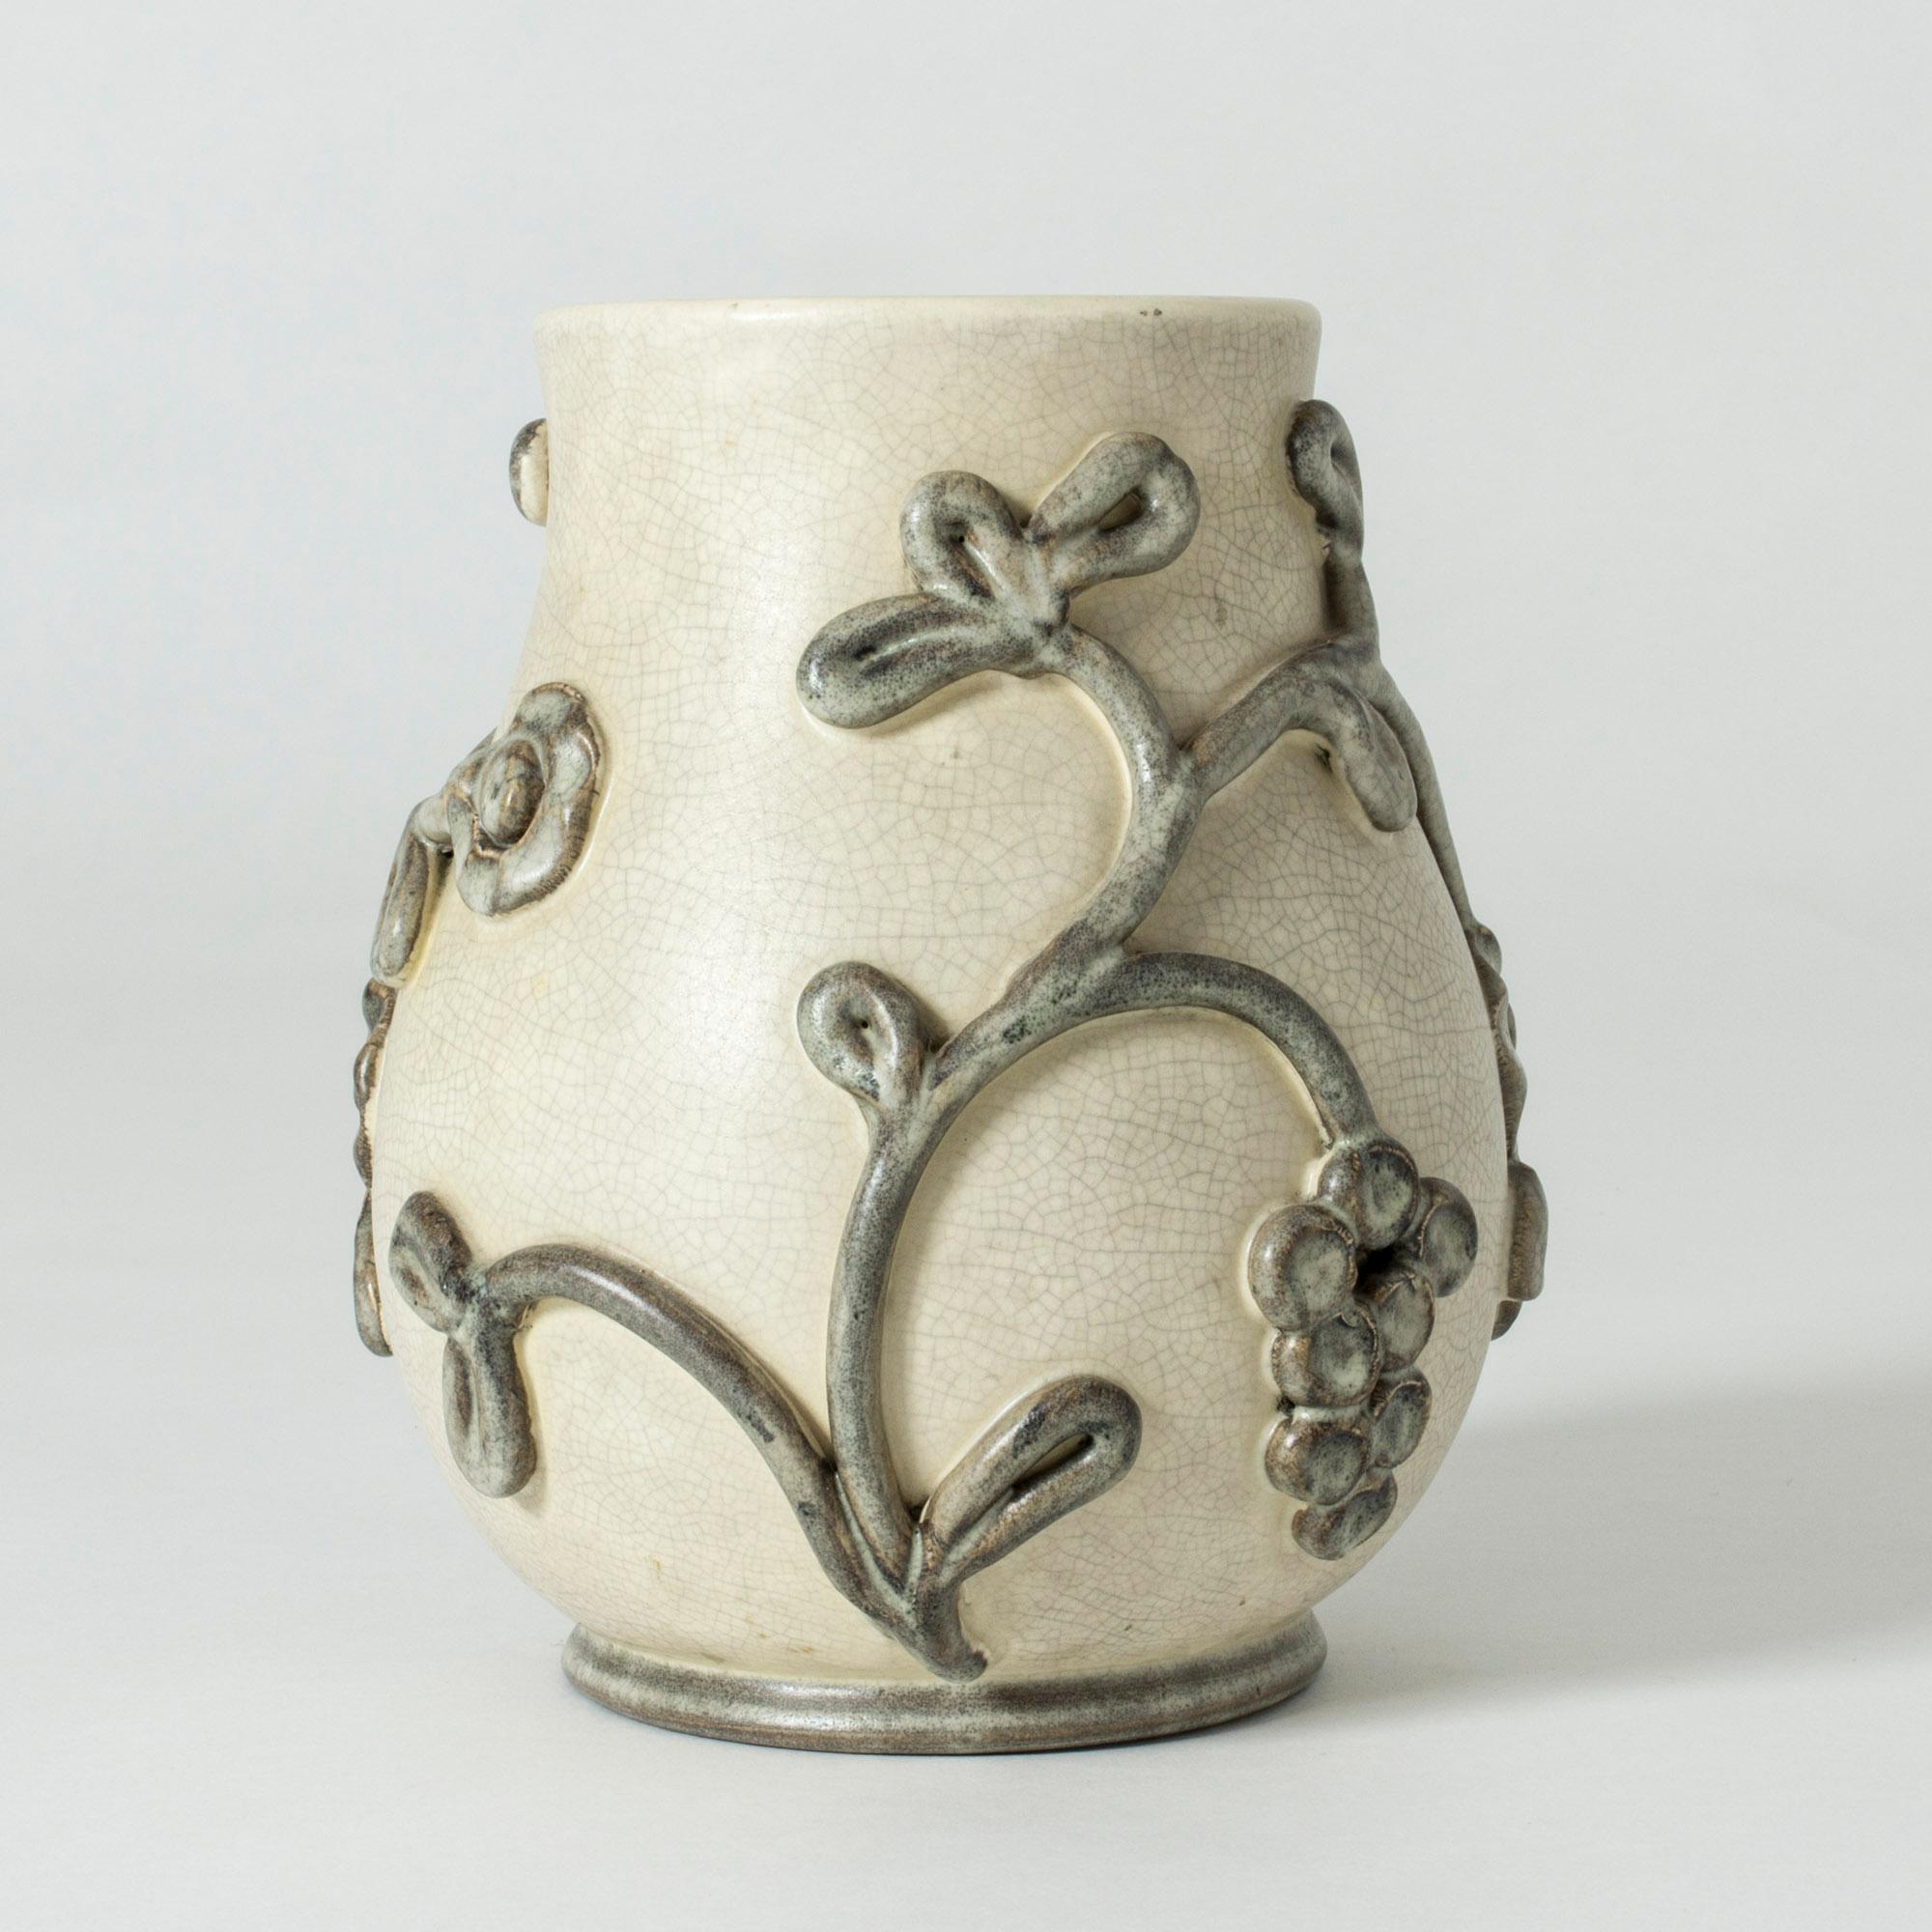 Magnifique vase en faïence d'Eva Jancke-Björk. Tons naturels atténués en blanc cassé et gris. Décor d'une vigne stylisée avec glaçure épaisse.